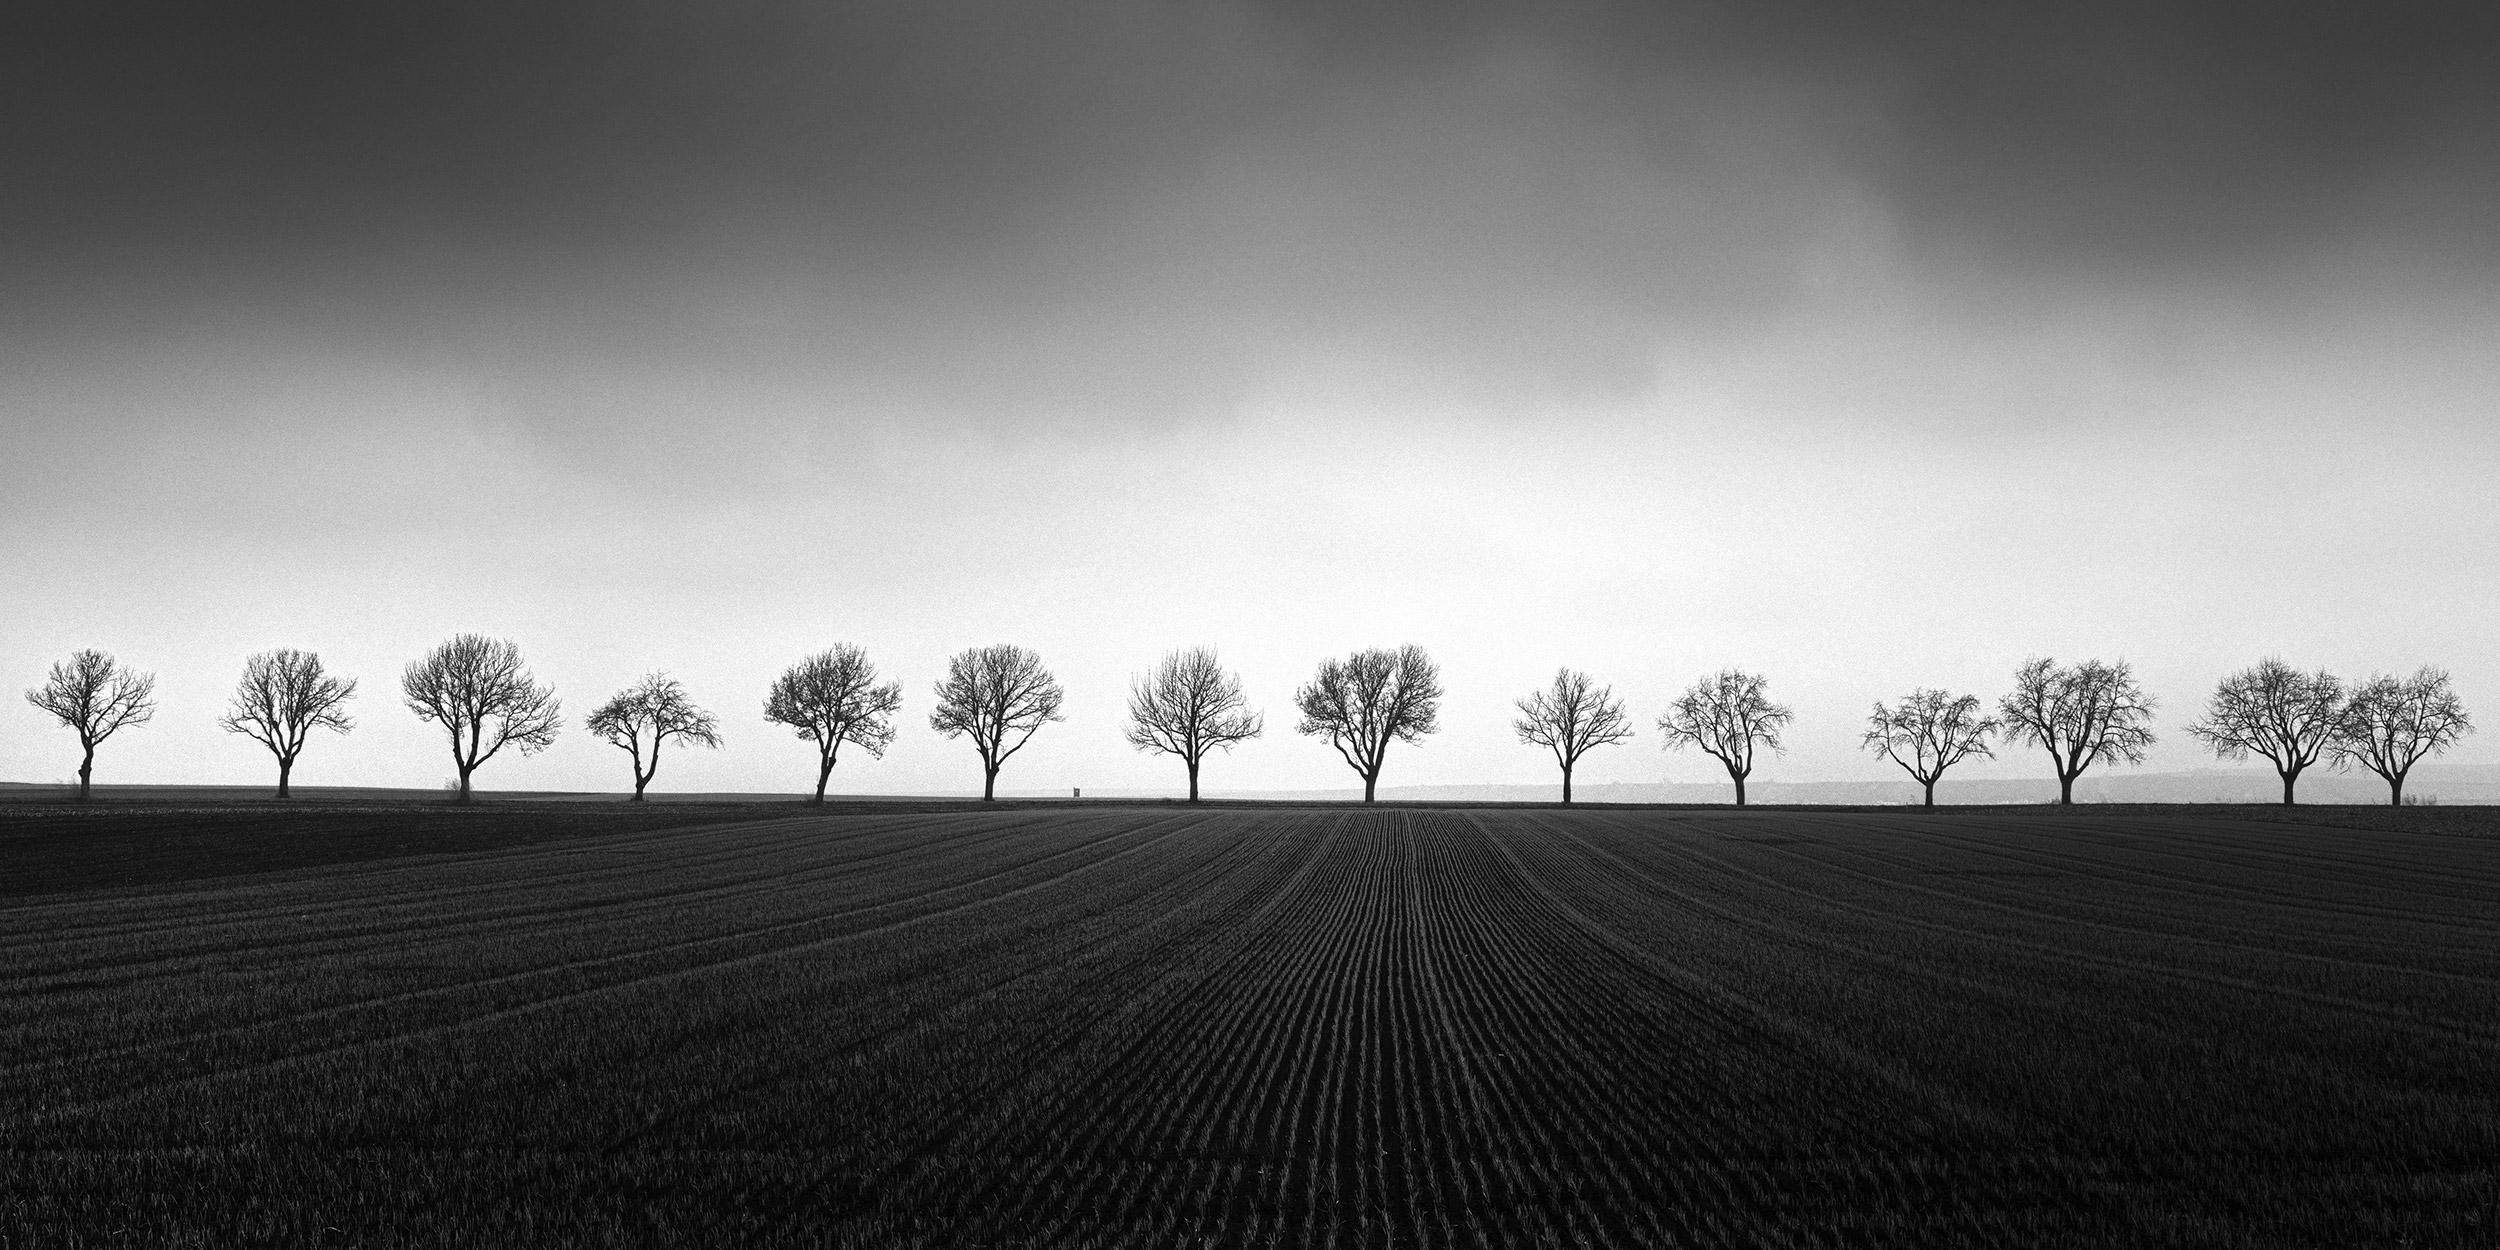 Black and White Photograph Gerald Berghammer - Quatorze cerisiers, champ de maïs, photographie noir et blanc, art, paysage